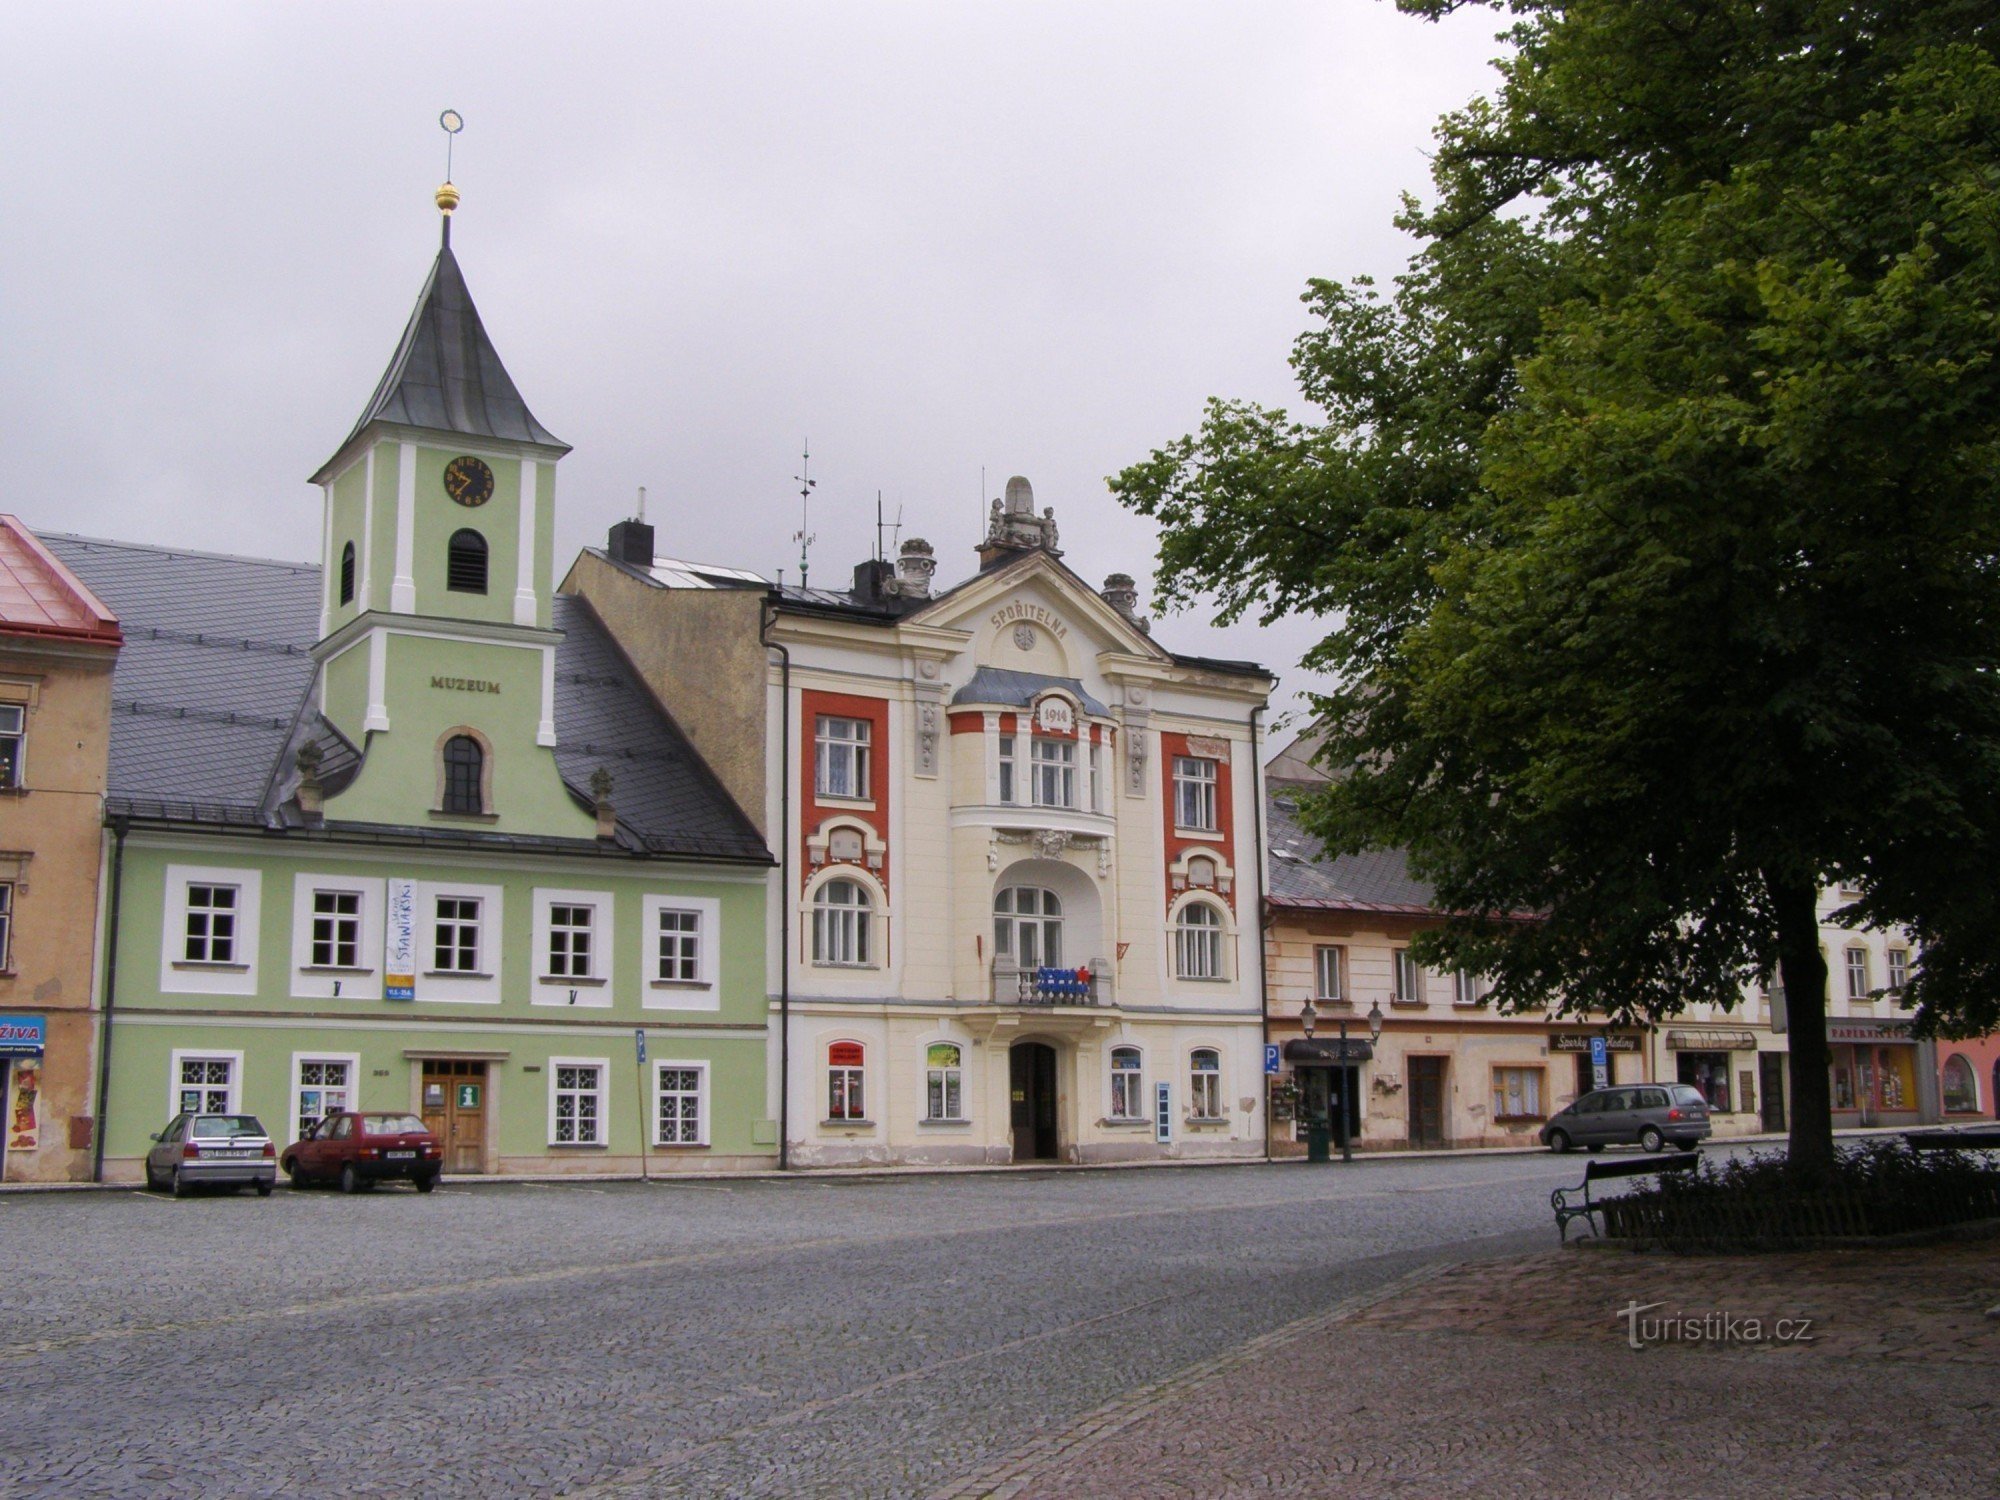 Králíky - Museum, Tourist Information Center